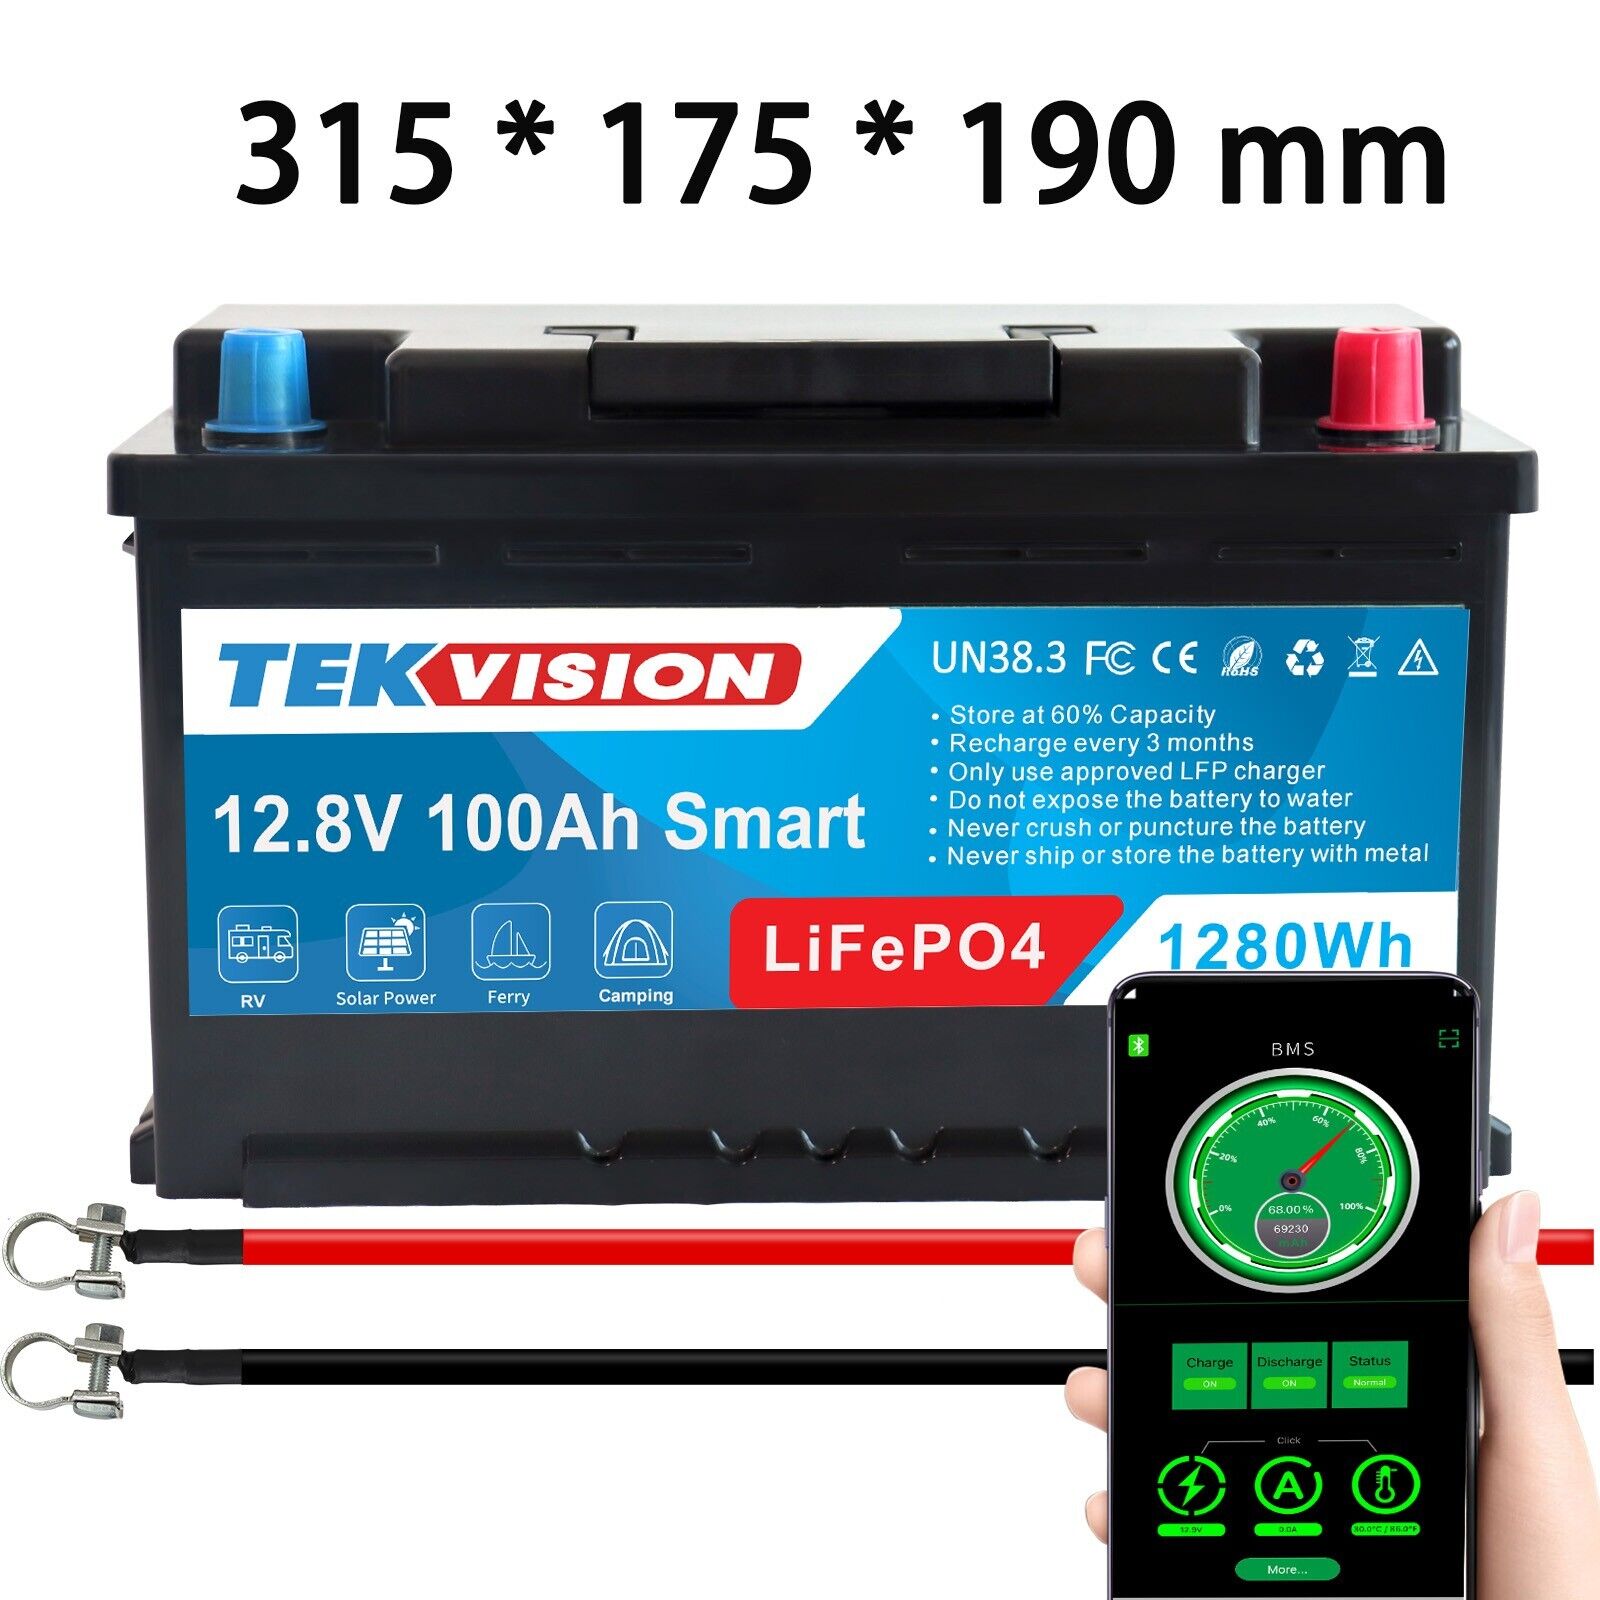 12V 100Ah H7 Smart Lithium Batterie 19% MwSt – Tekvision Technologies GmbH